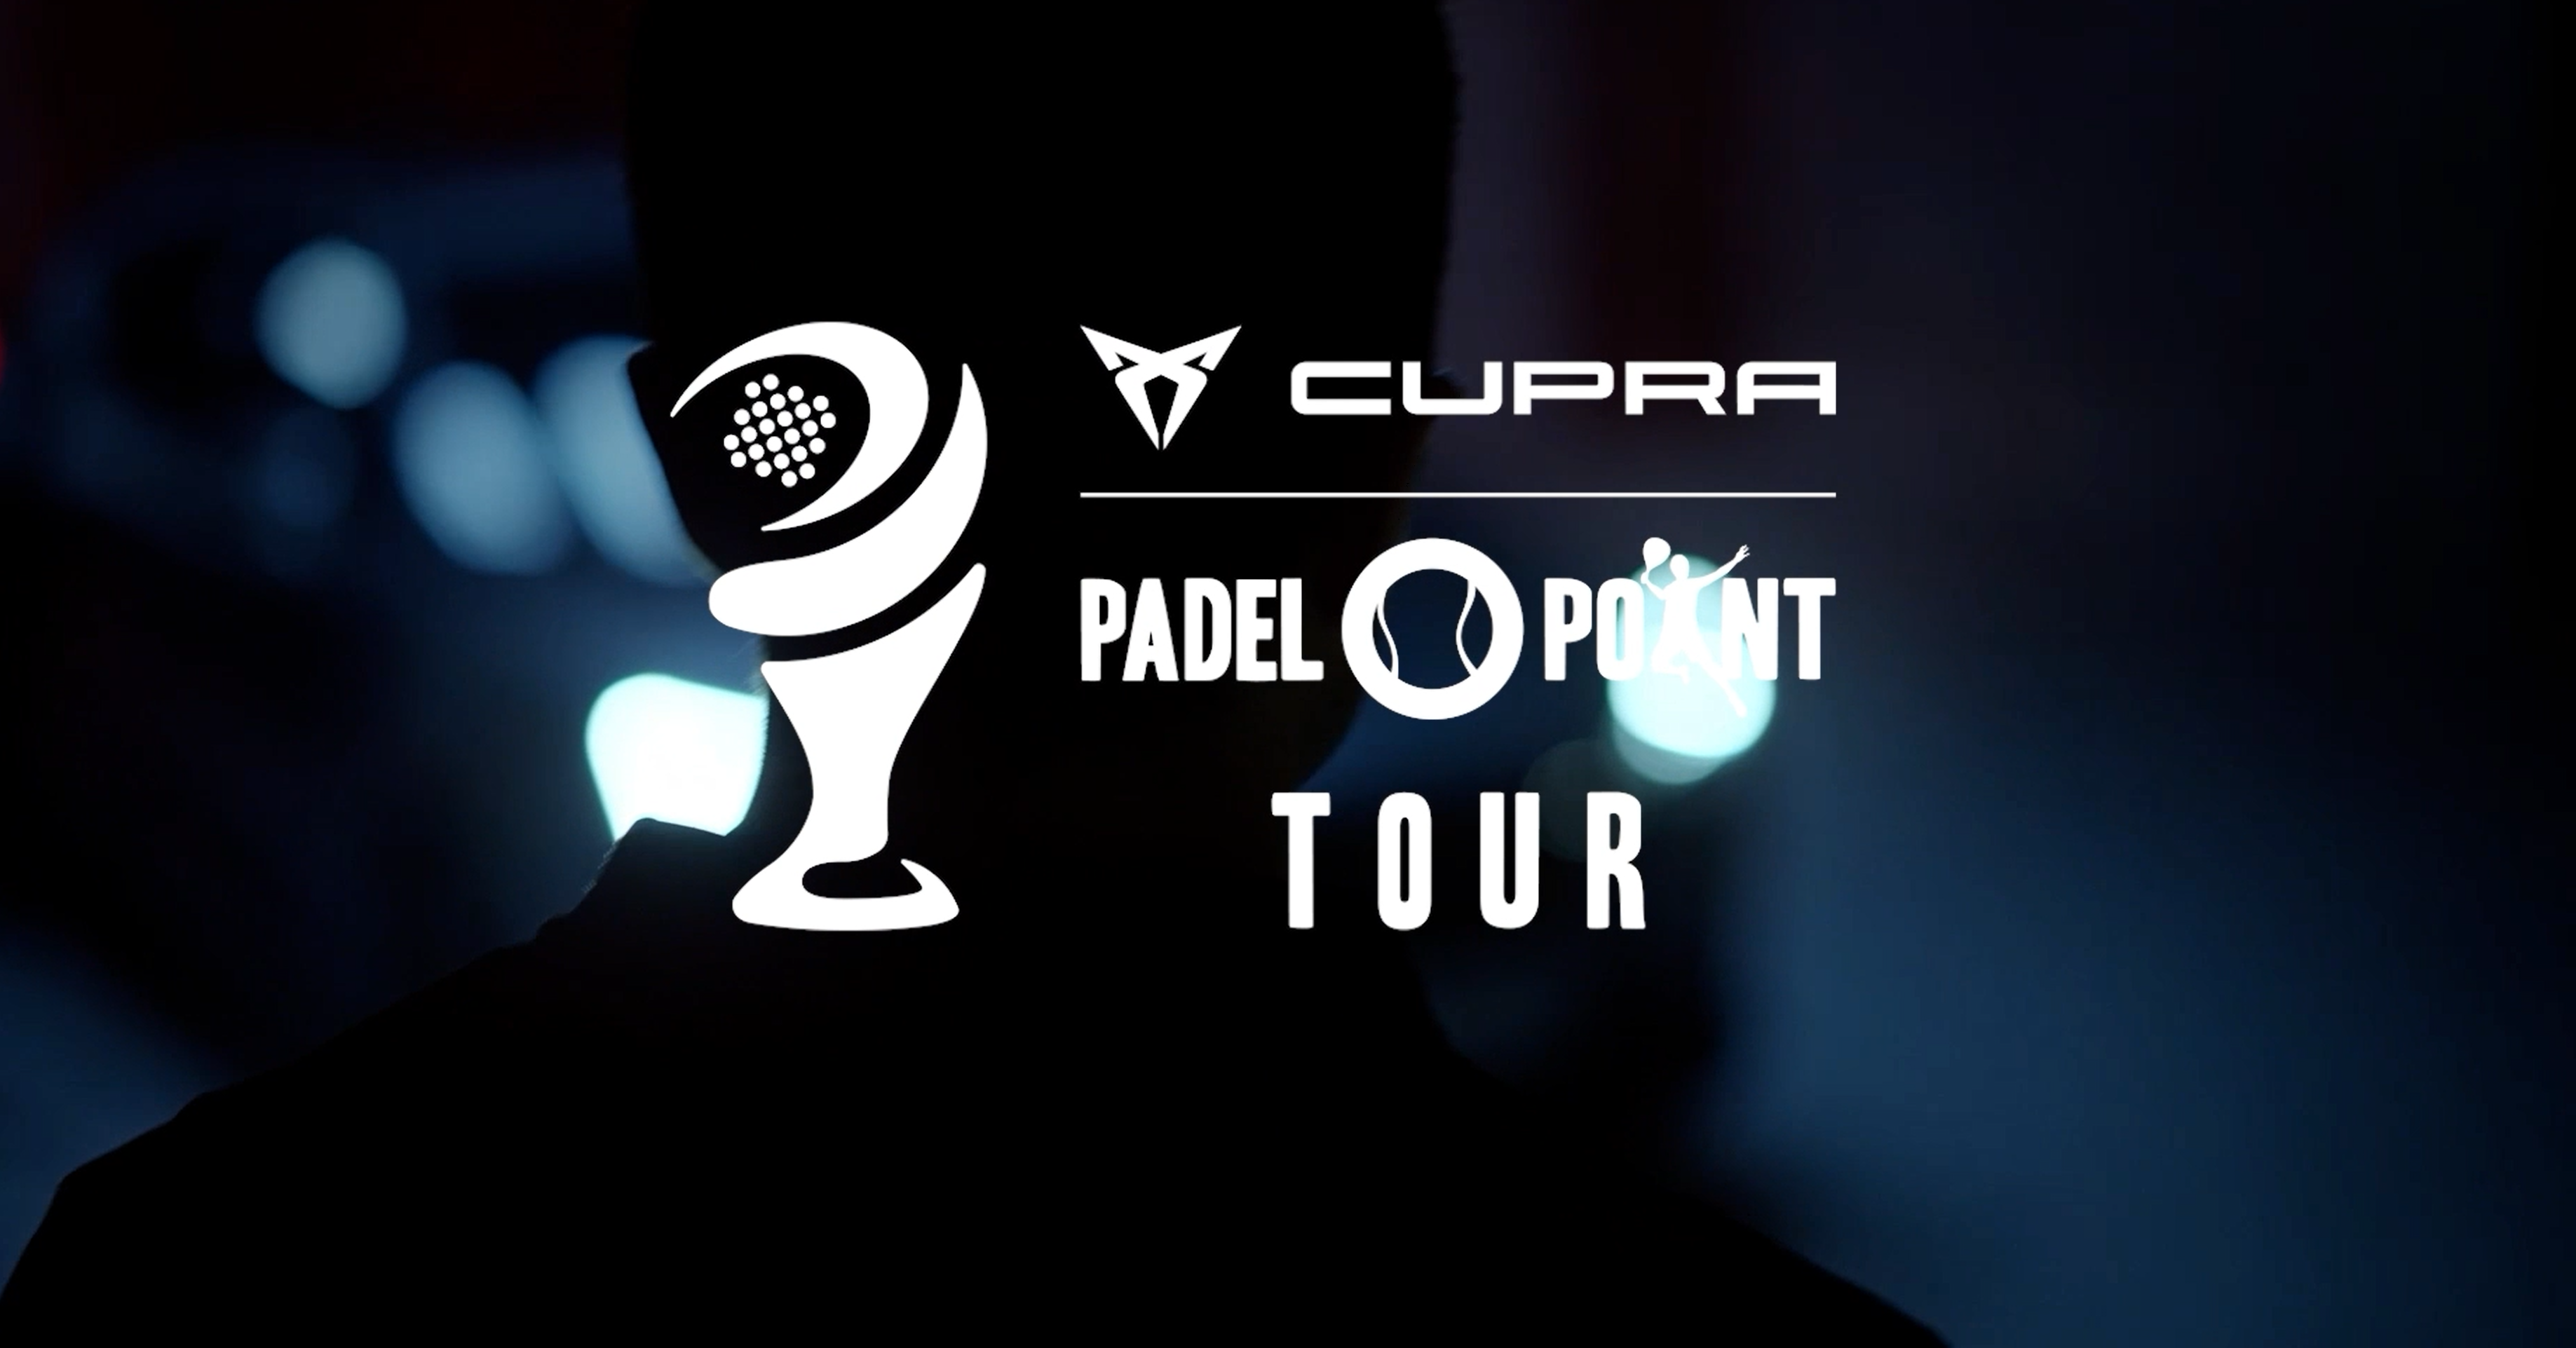 Cupra Padel-Point Tour Rennes: una exposició atractiva!